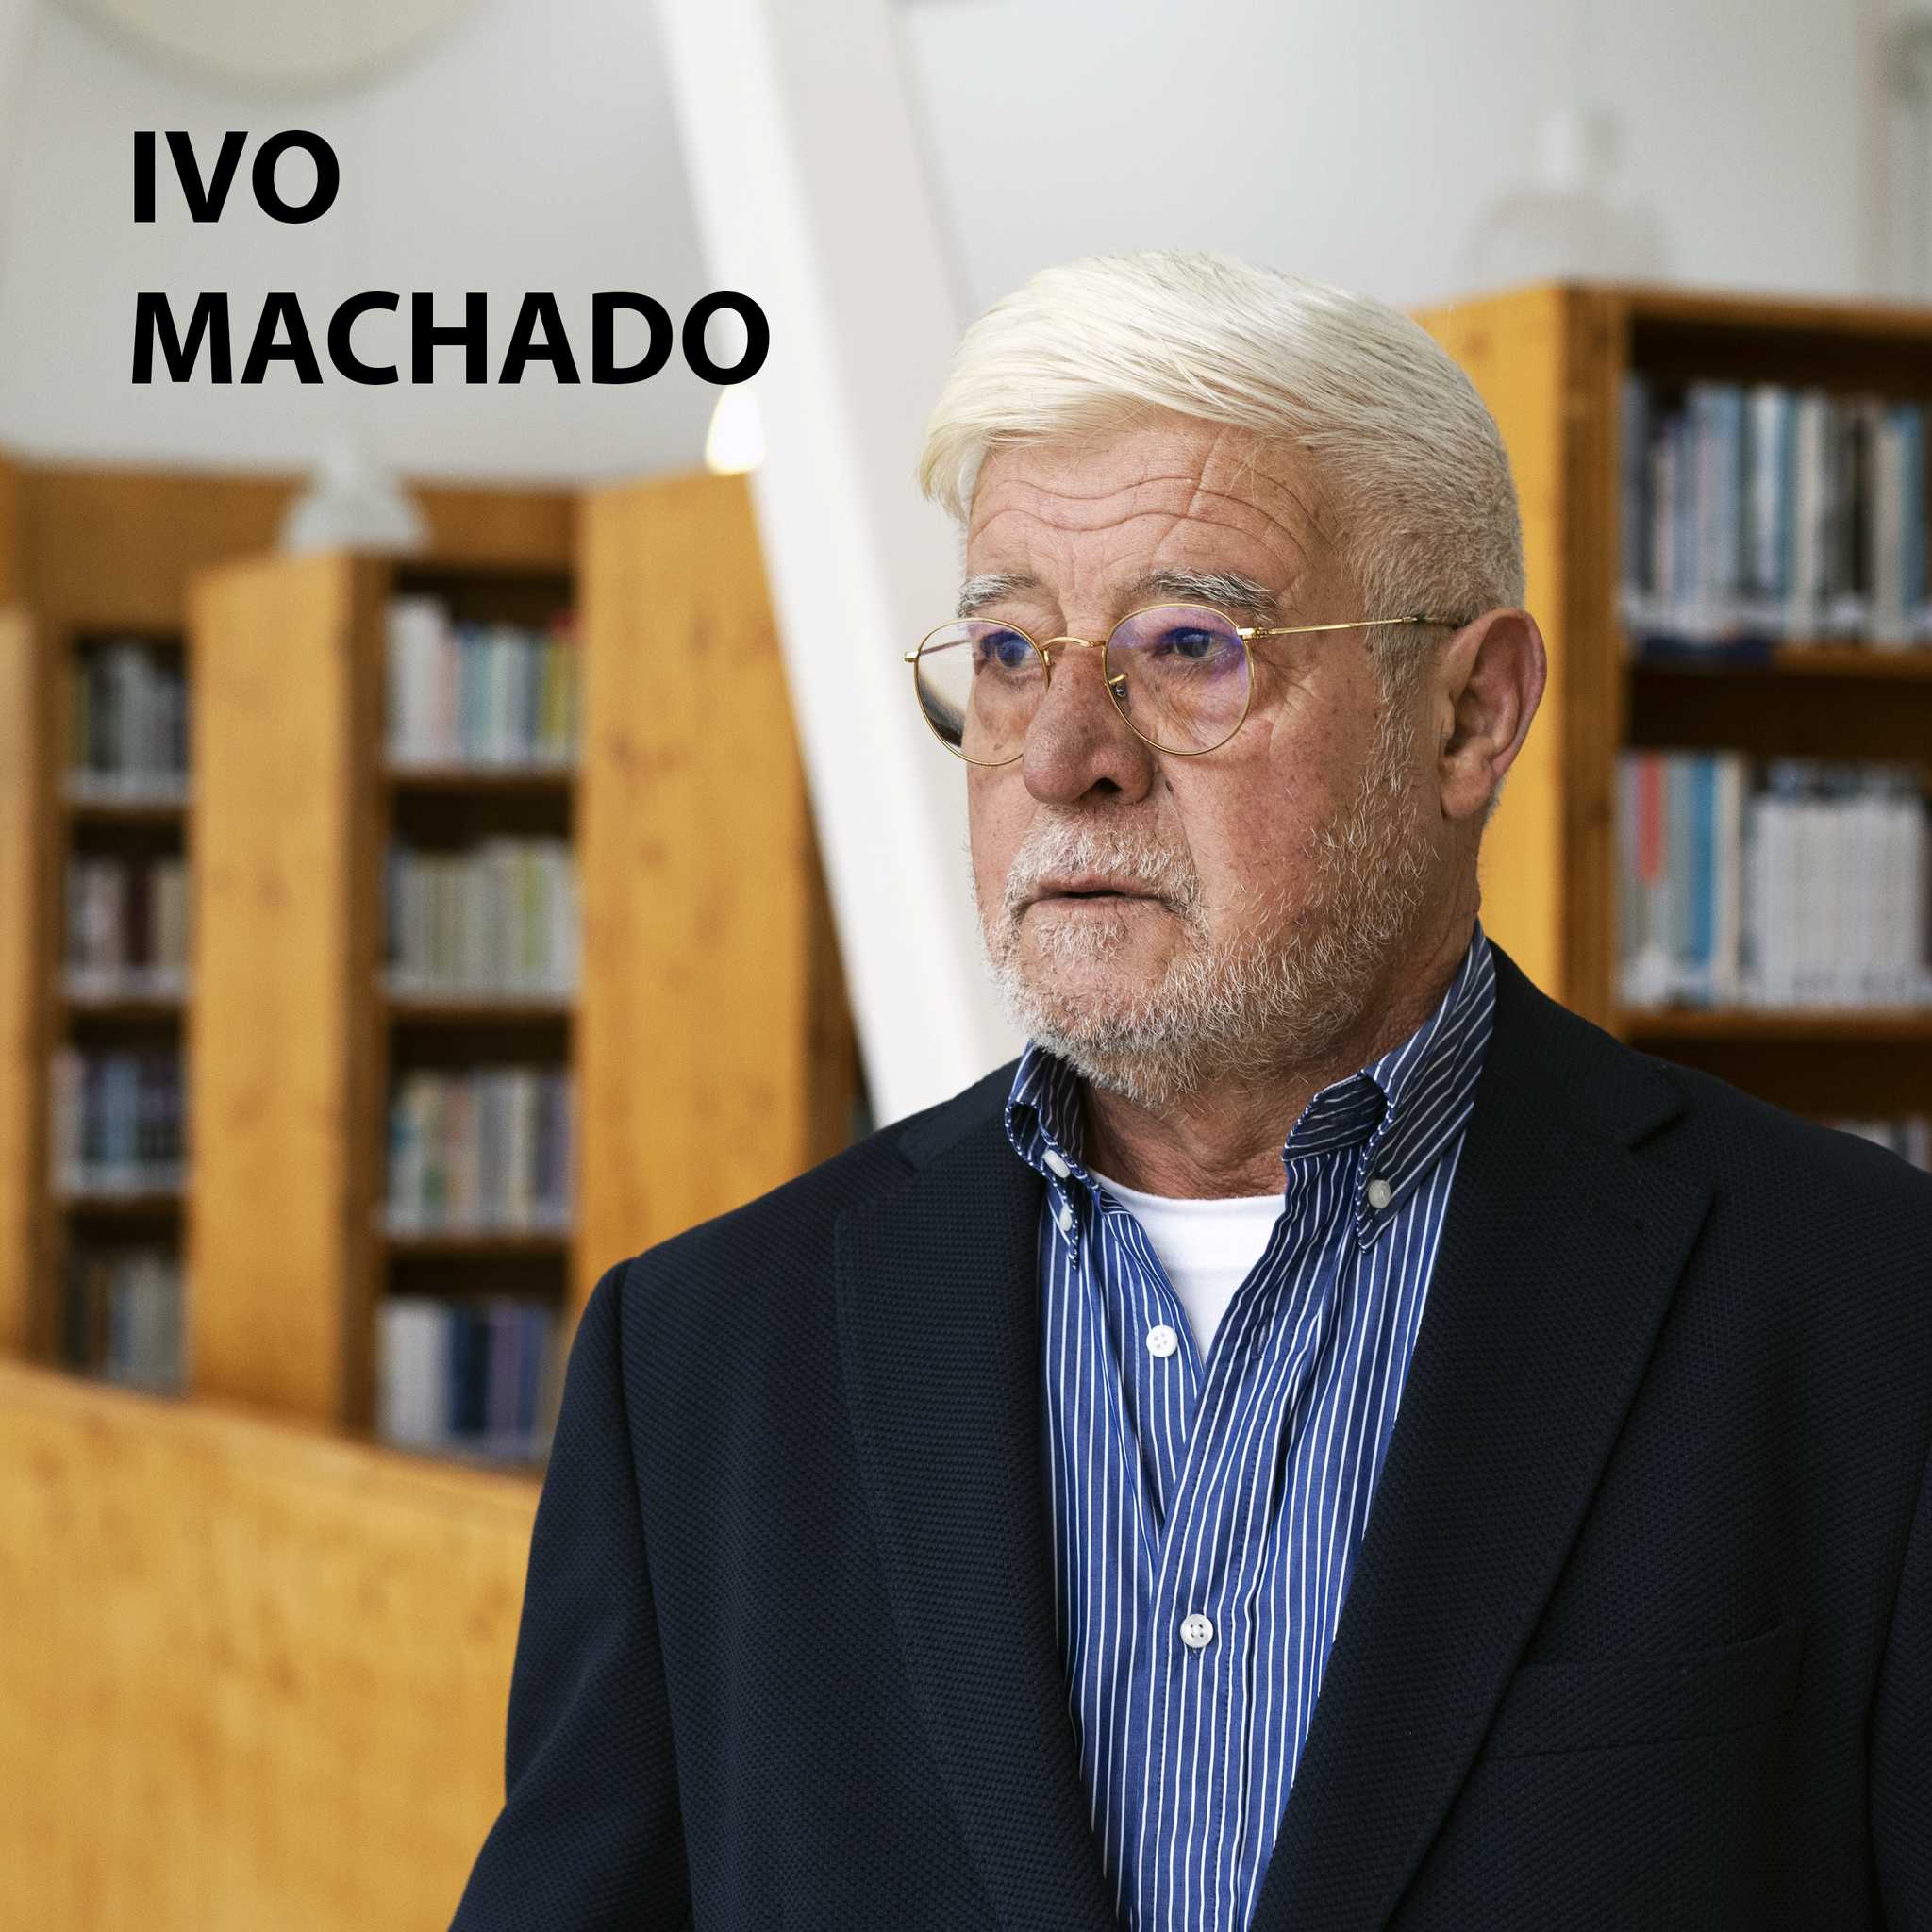 Livro de Cabeceira EP.33 – Ivo Machado apresenta a obra “As Novas Cartas Portuguesas” das autoras Maria Isabel Barreno, Maria Teresa Horta e Maria Velho da Costa.